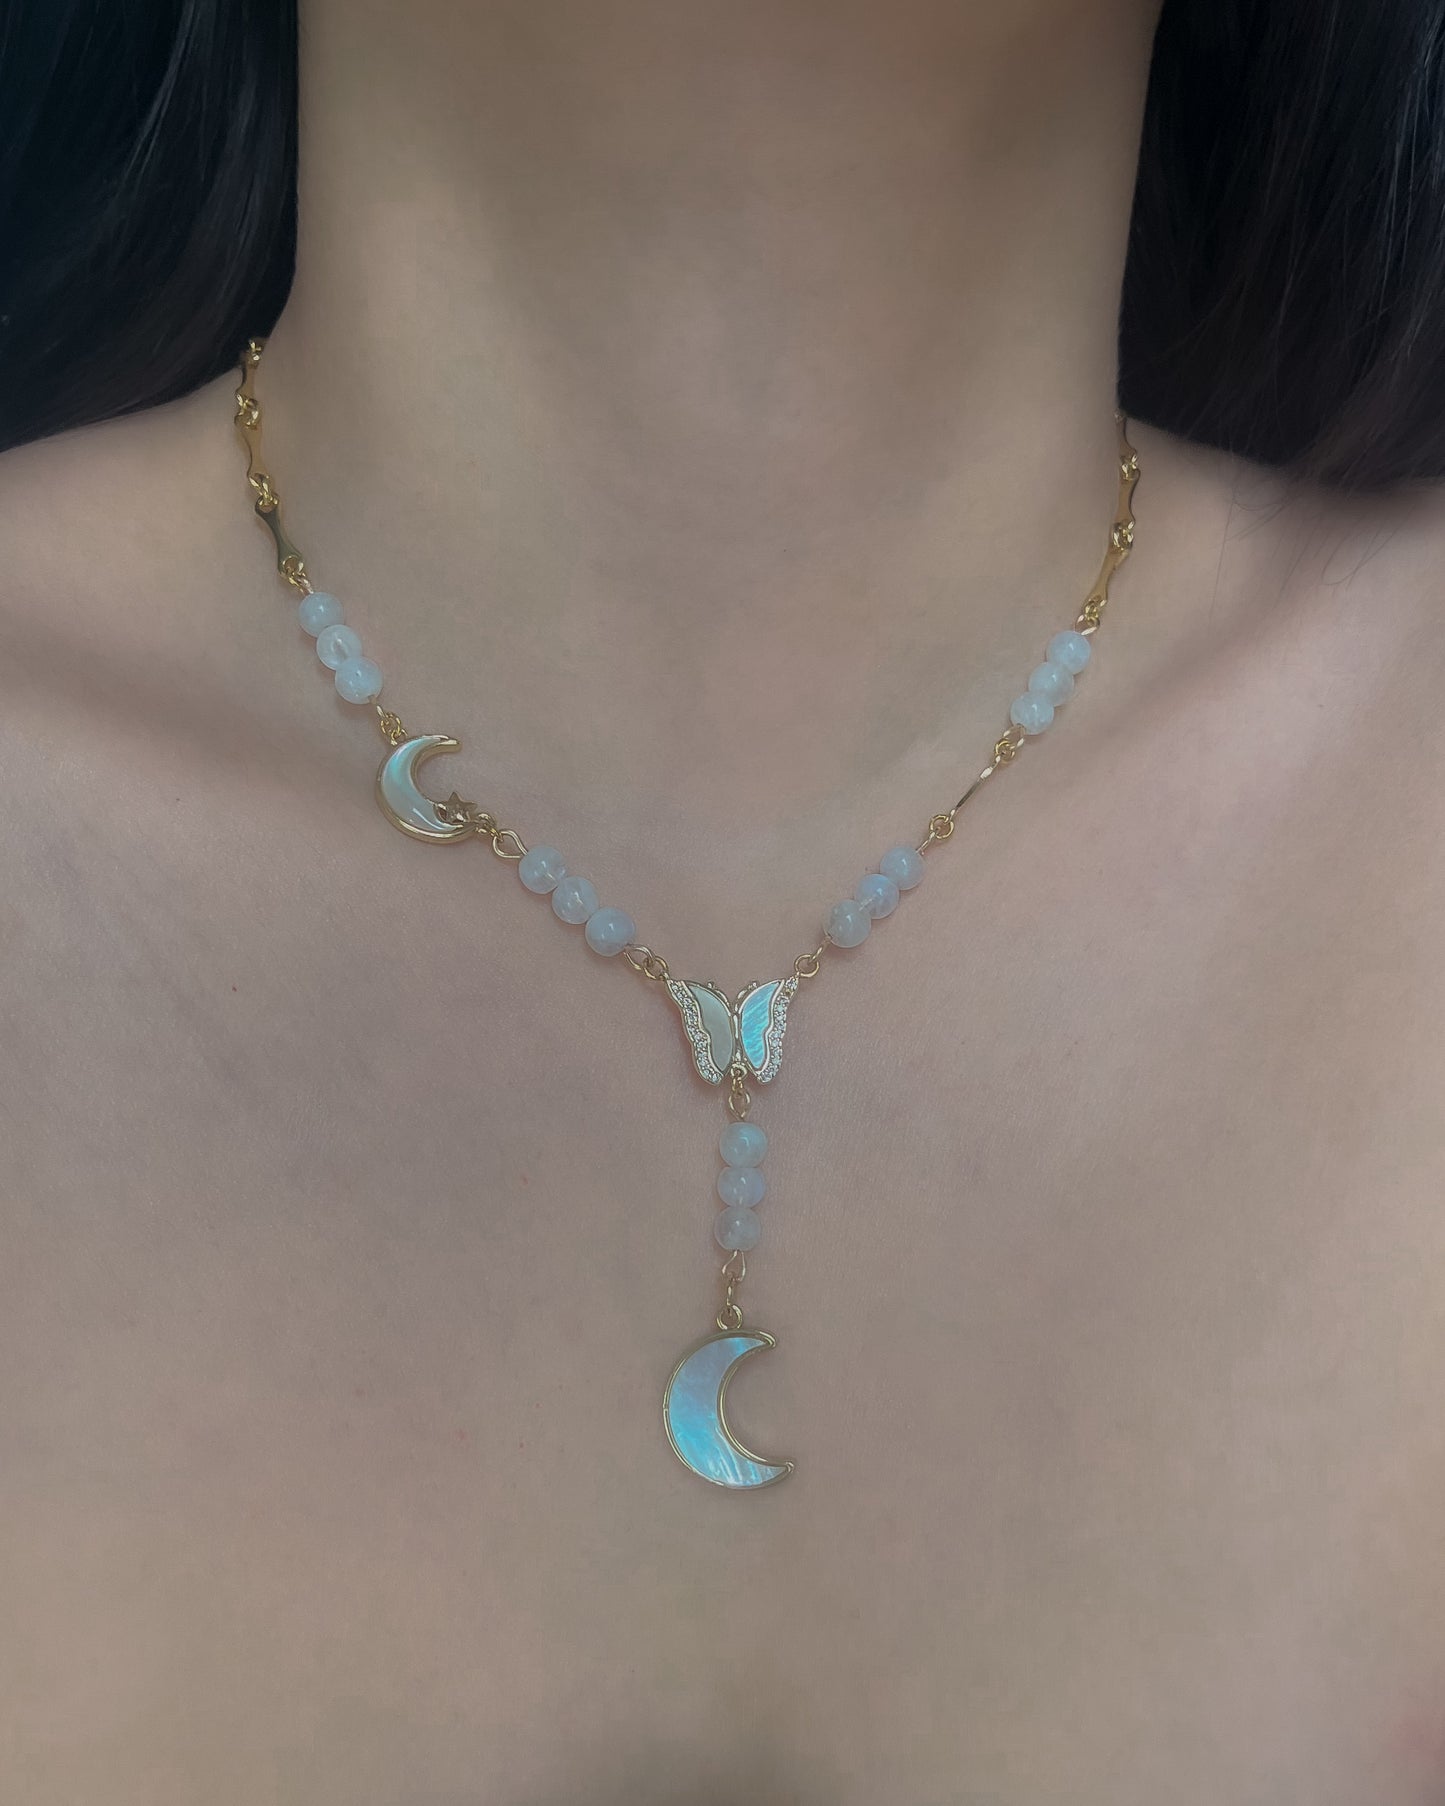 The Celeste Lariat Charm Necklace